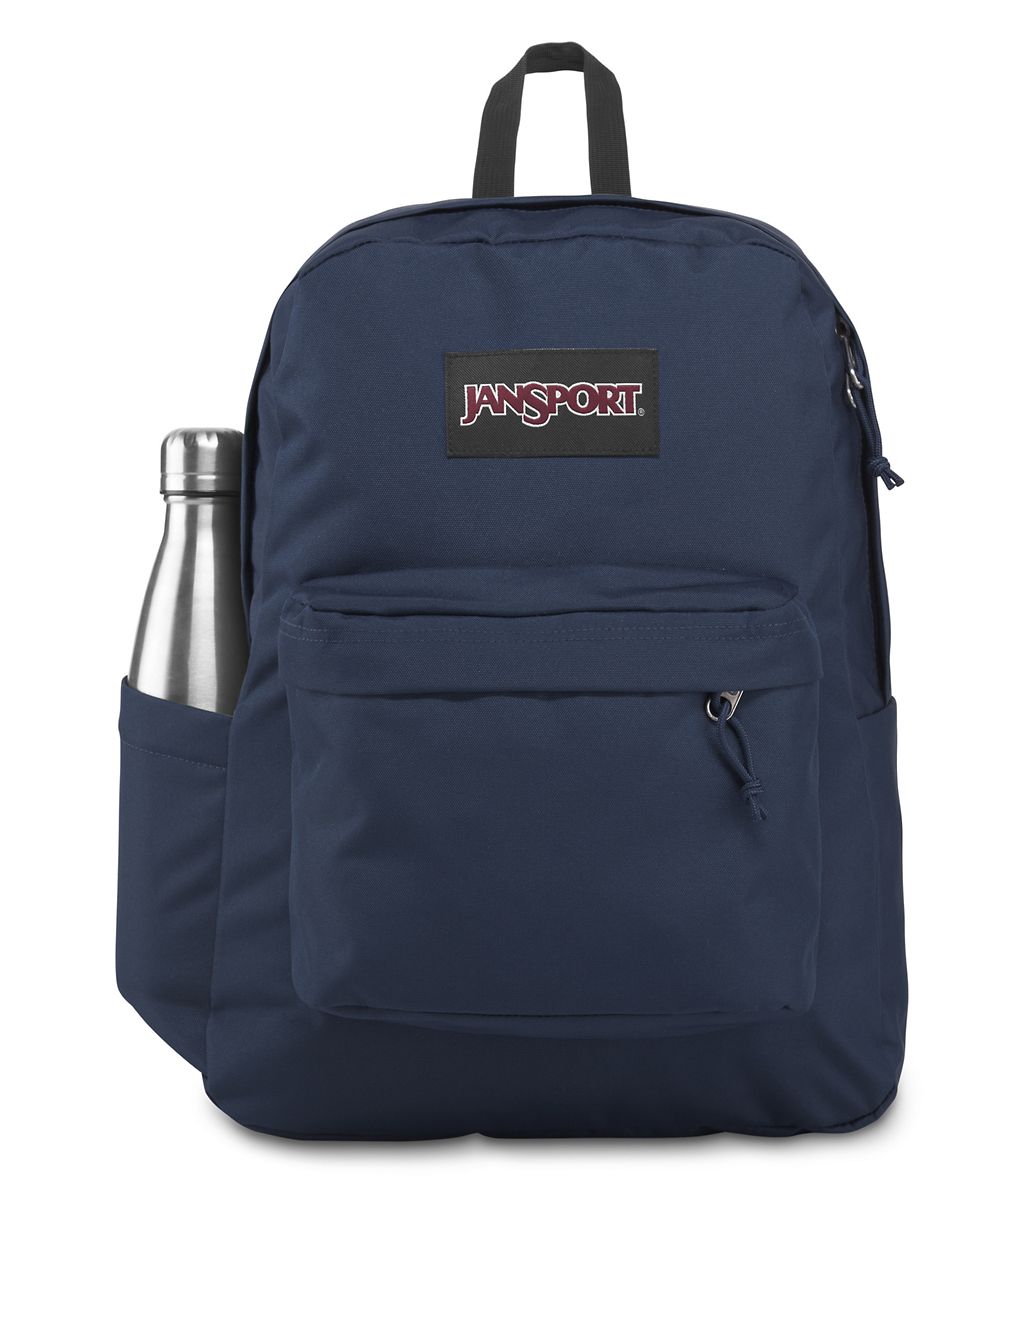 SuperBreak Plus Backpack 5 of 5